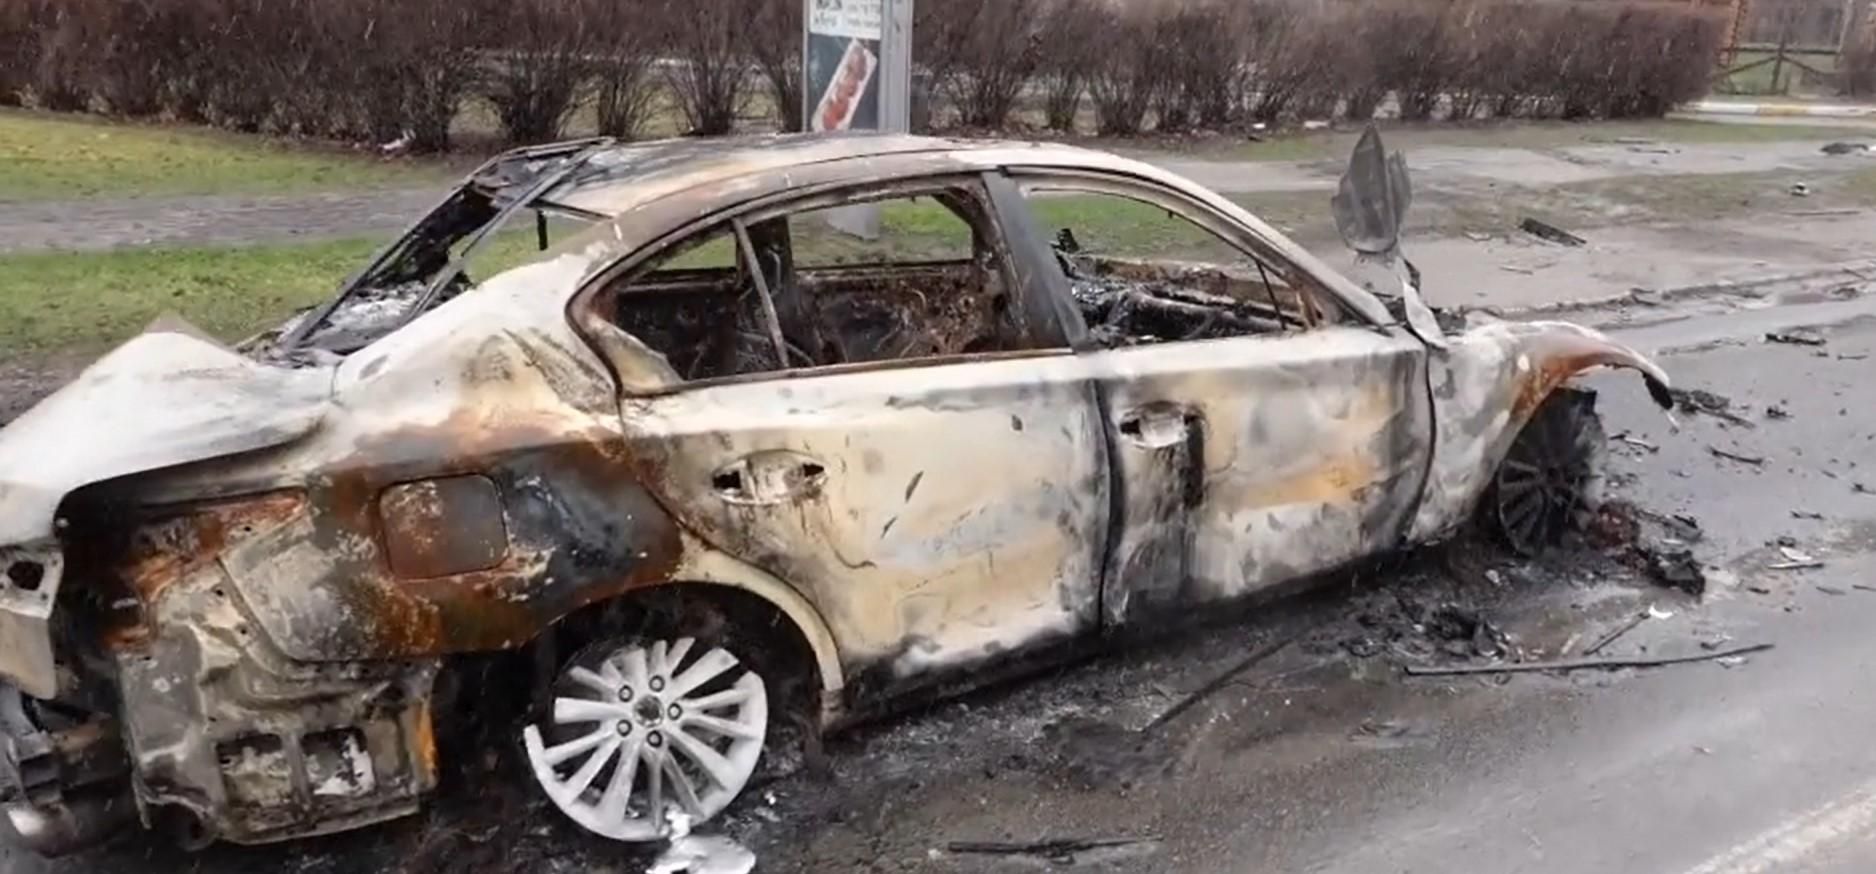 Раздавленные авто с телами и пожарище: ужасное видео из Бучи